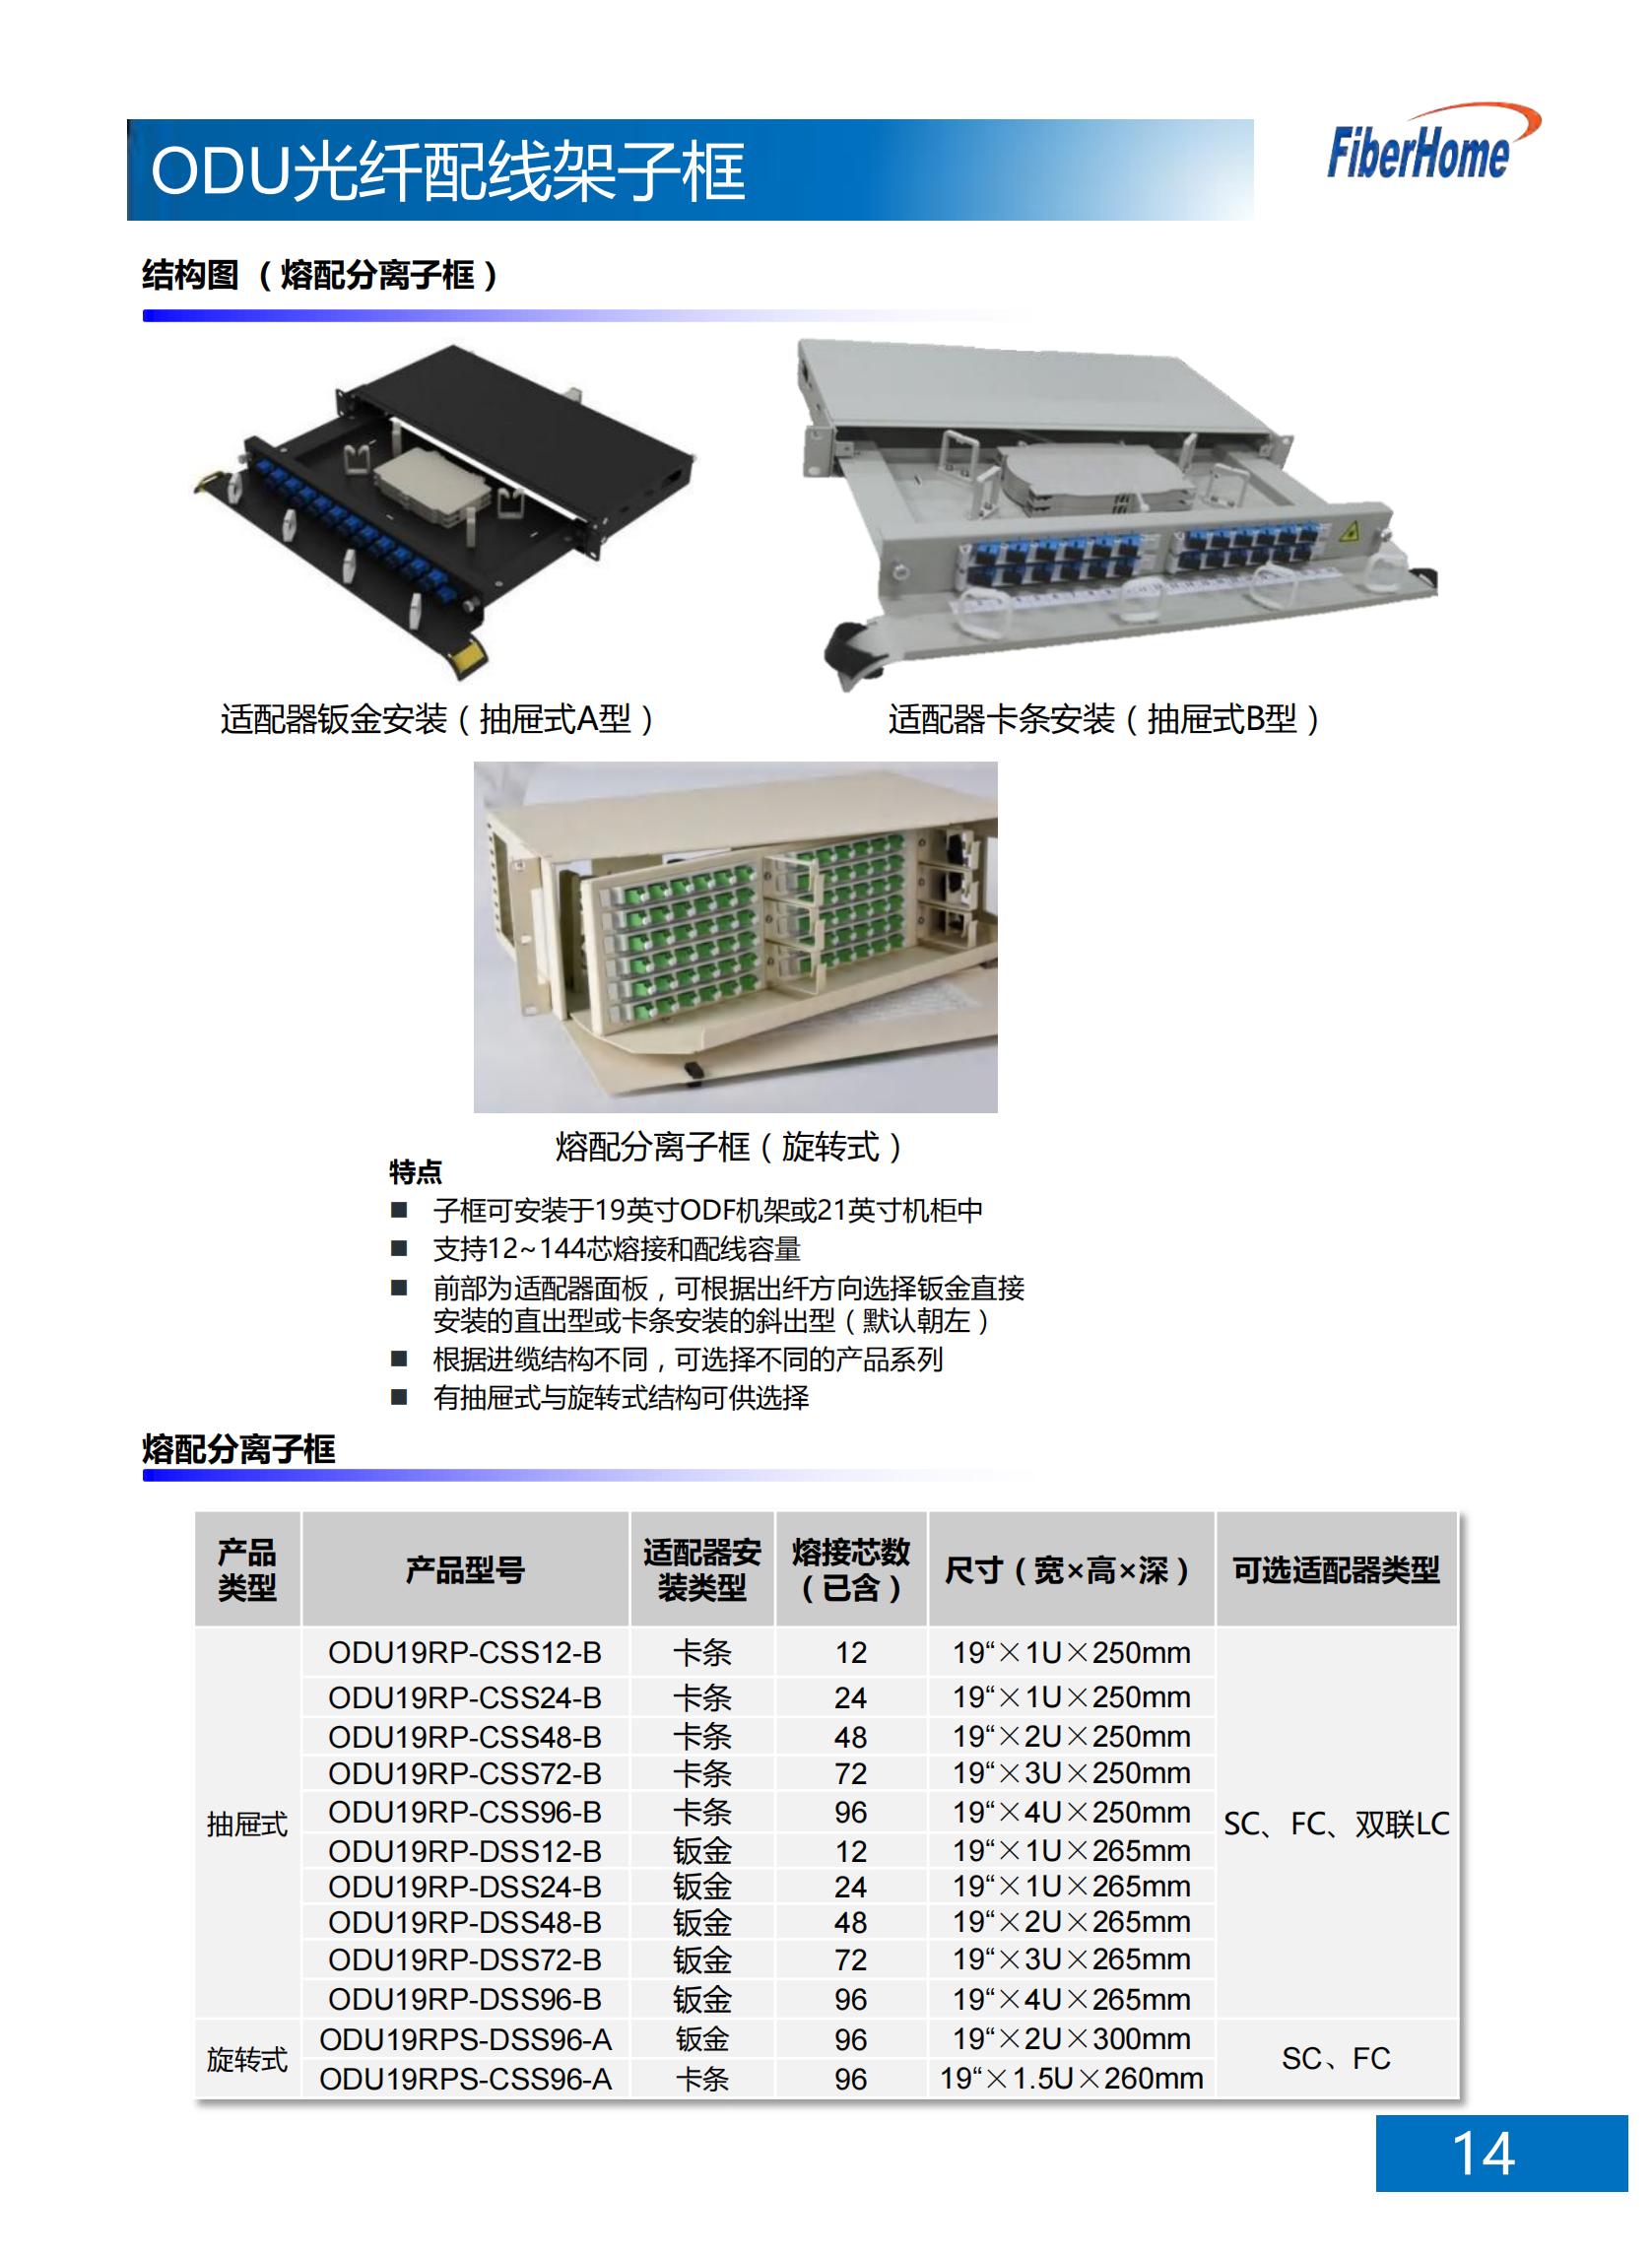 72芯 ODU光纤配线架子框 ODU19T-A1272-B-SC （含12芯SC熔配一体化单元*6）